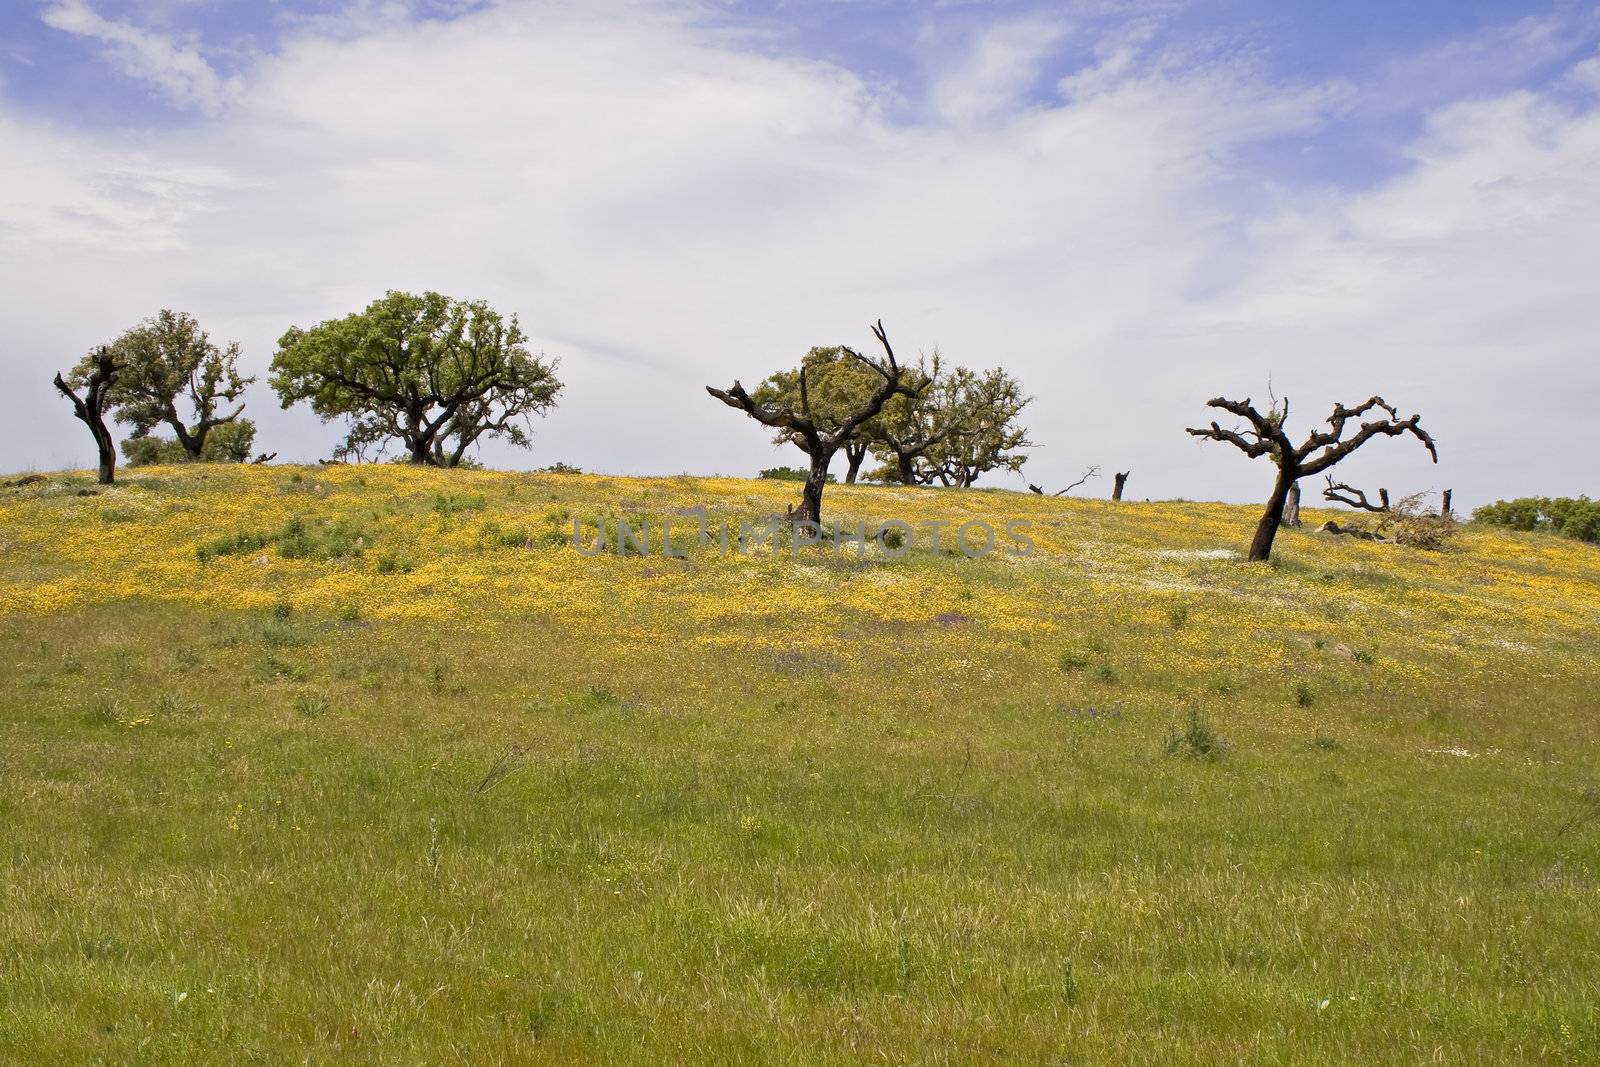 Spring landscape in Alentejo - Portugal